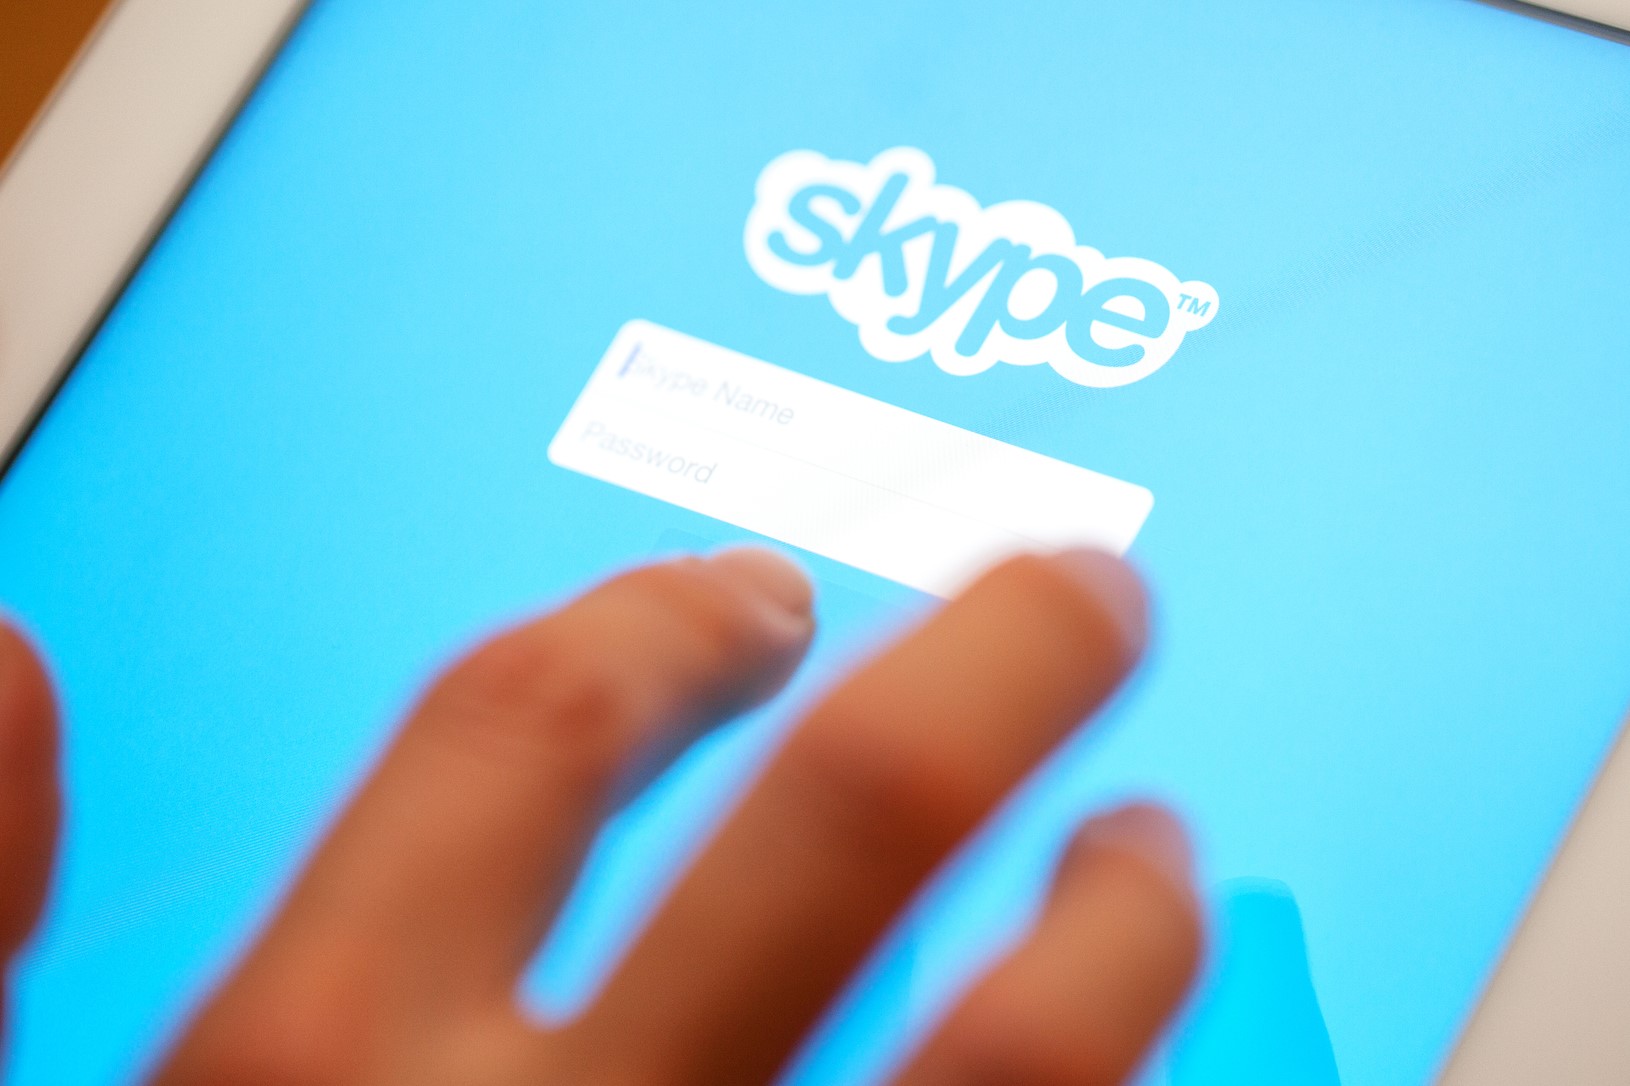 Honderden miljoenen dollars in Crypto worden dagelijks verruild via Skype